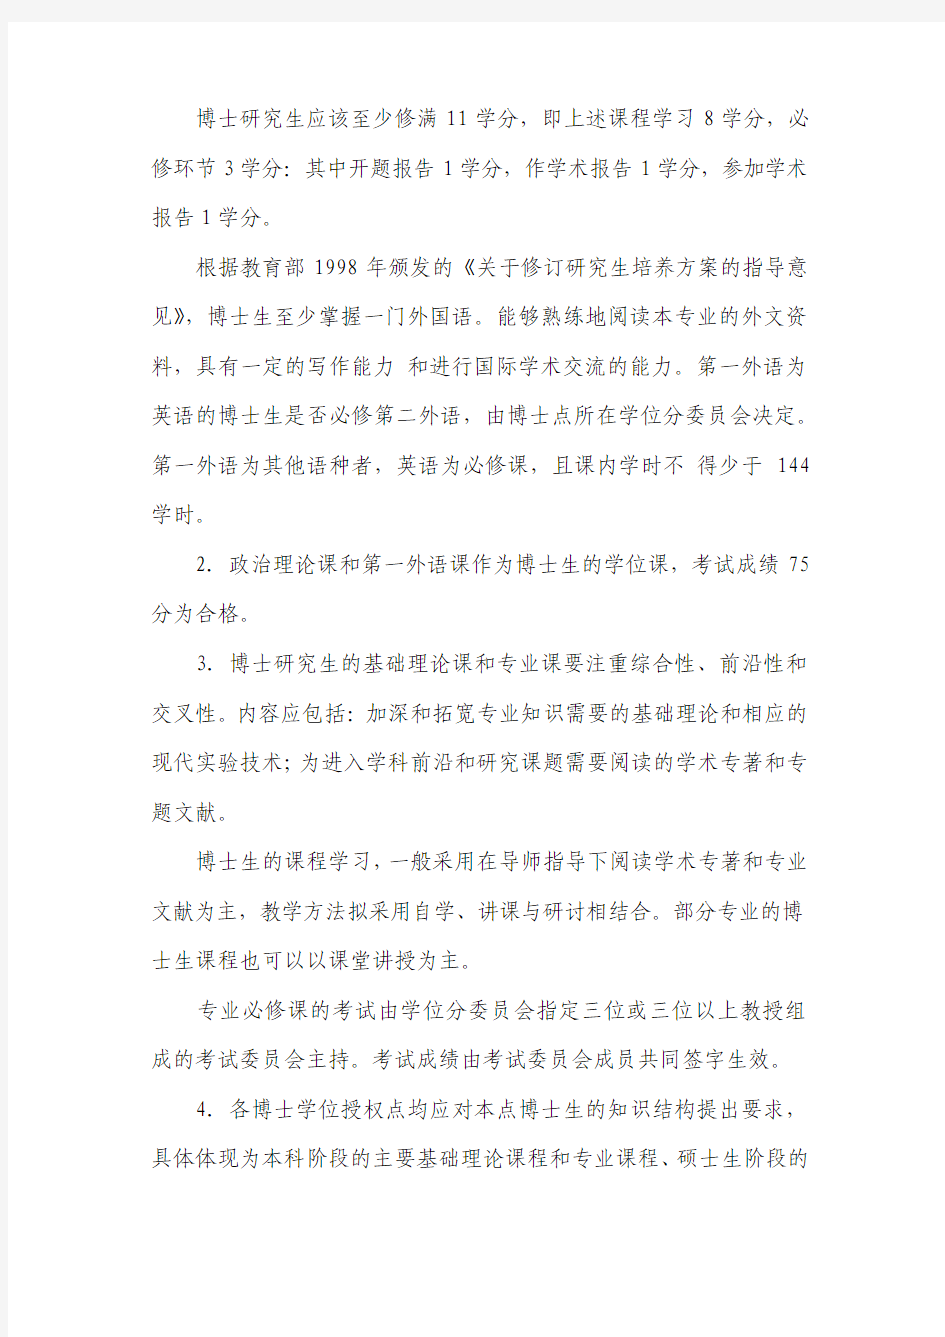 中国科学技术大学关于博士生培养工作的有关规定